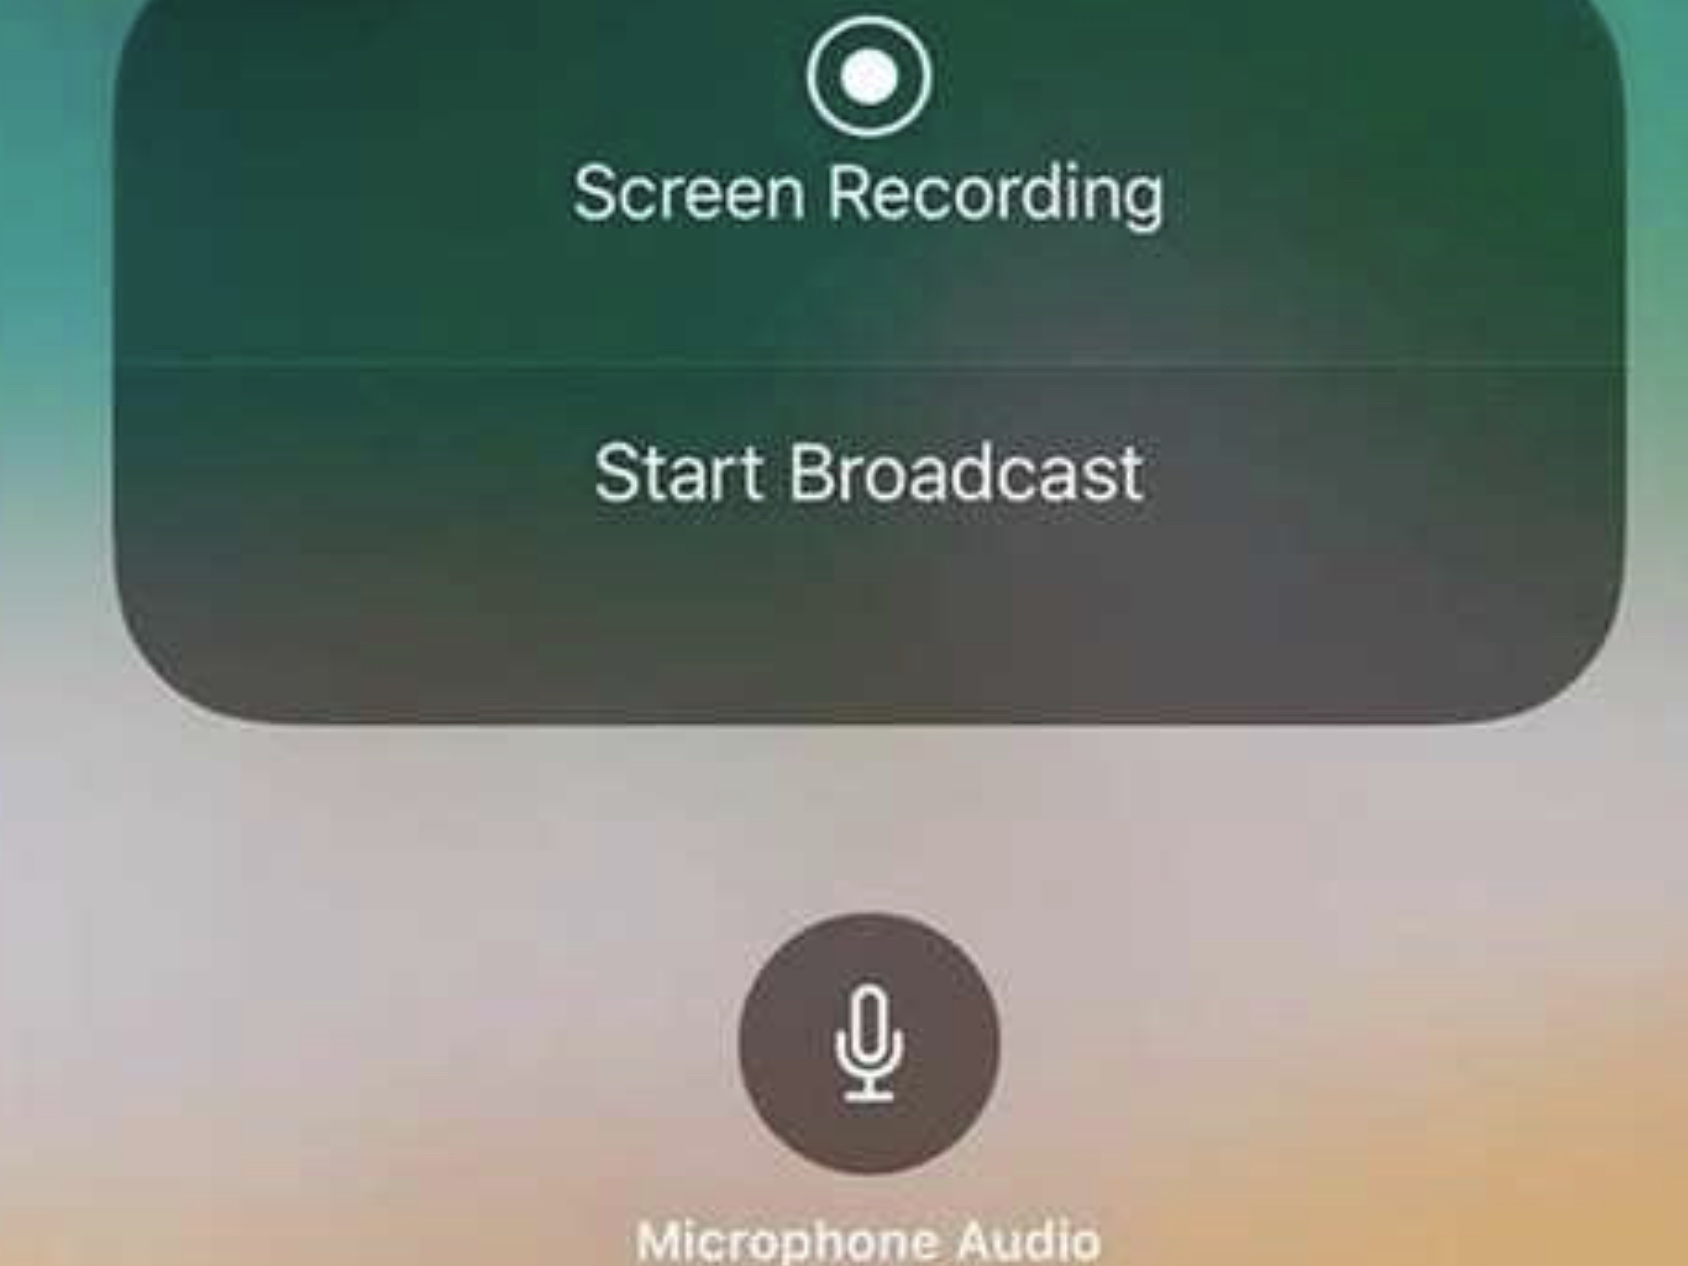 Det blir i iOS 11 mulig å direktestrømme video fra mobilen.